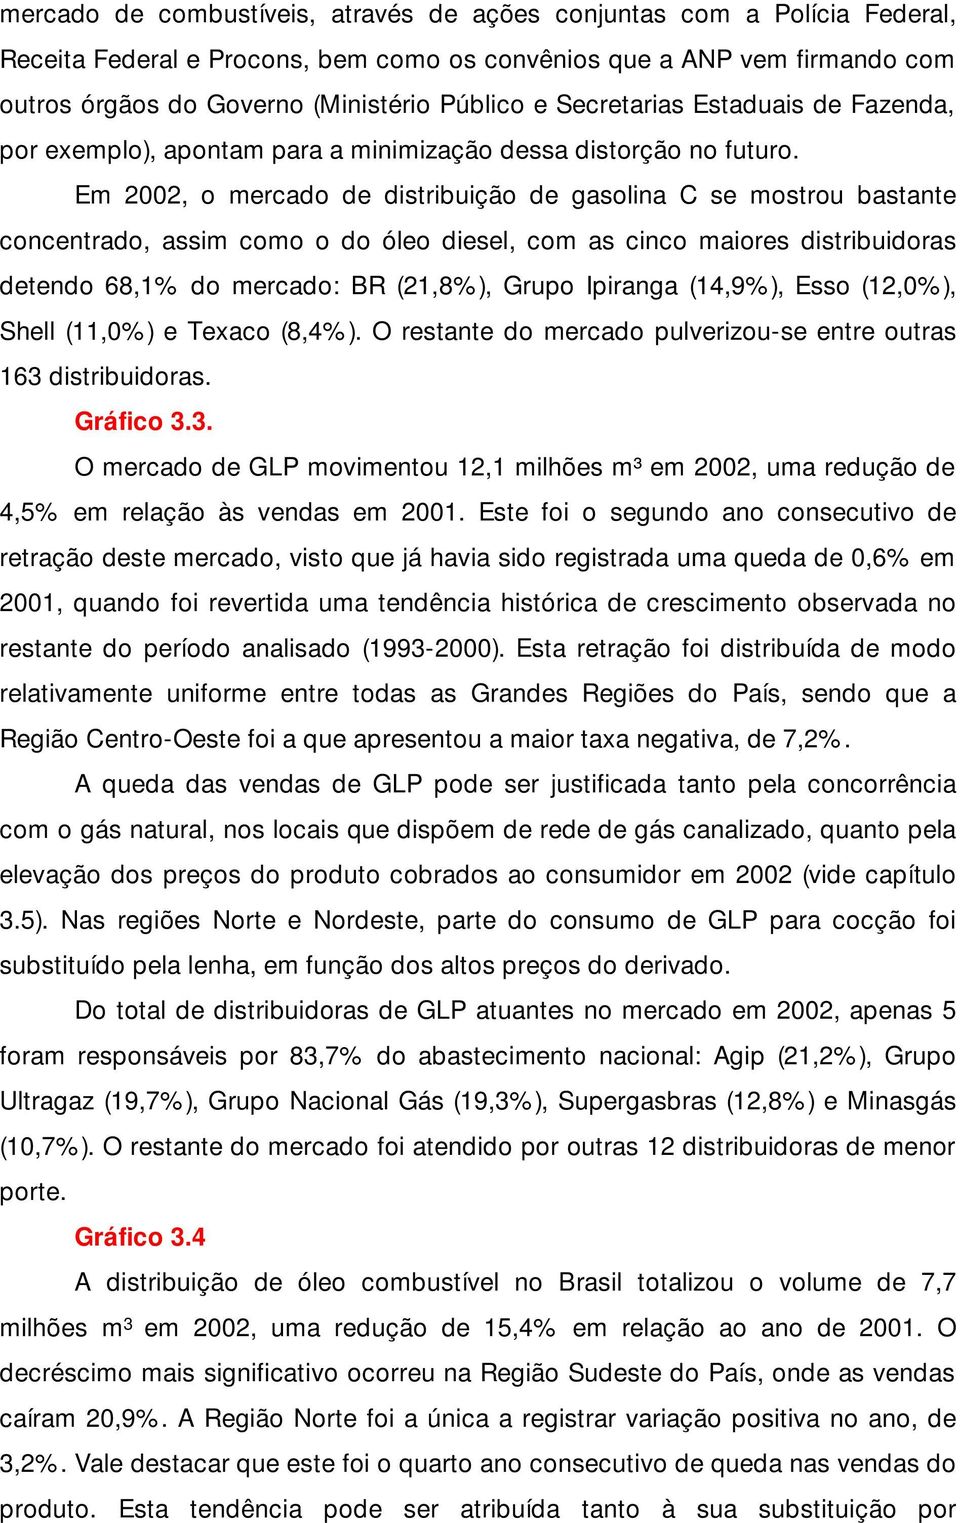 Em 2002, o mercado de distribuição de gasolina C se mostrou bastante concentrado, assim como o do óleo diesel, com as cinco maiores distribuidoras detendo 68,1% do mercado: BR (21,8%), Grupo Ipiranga